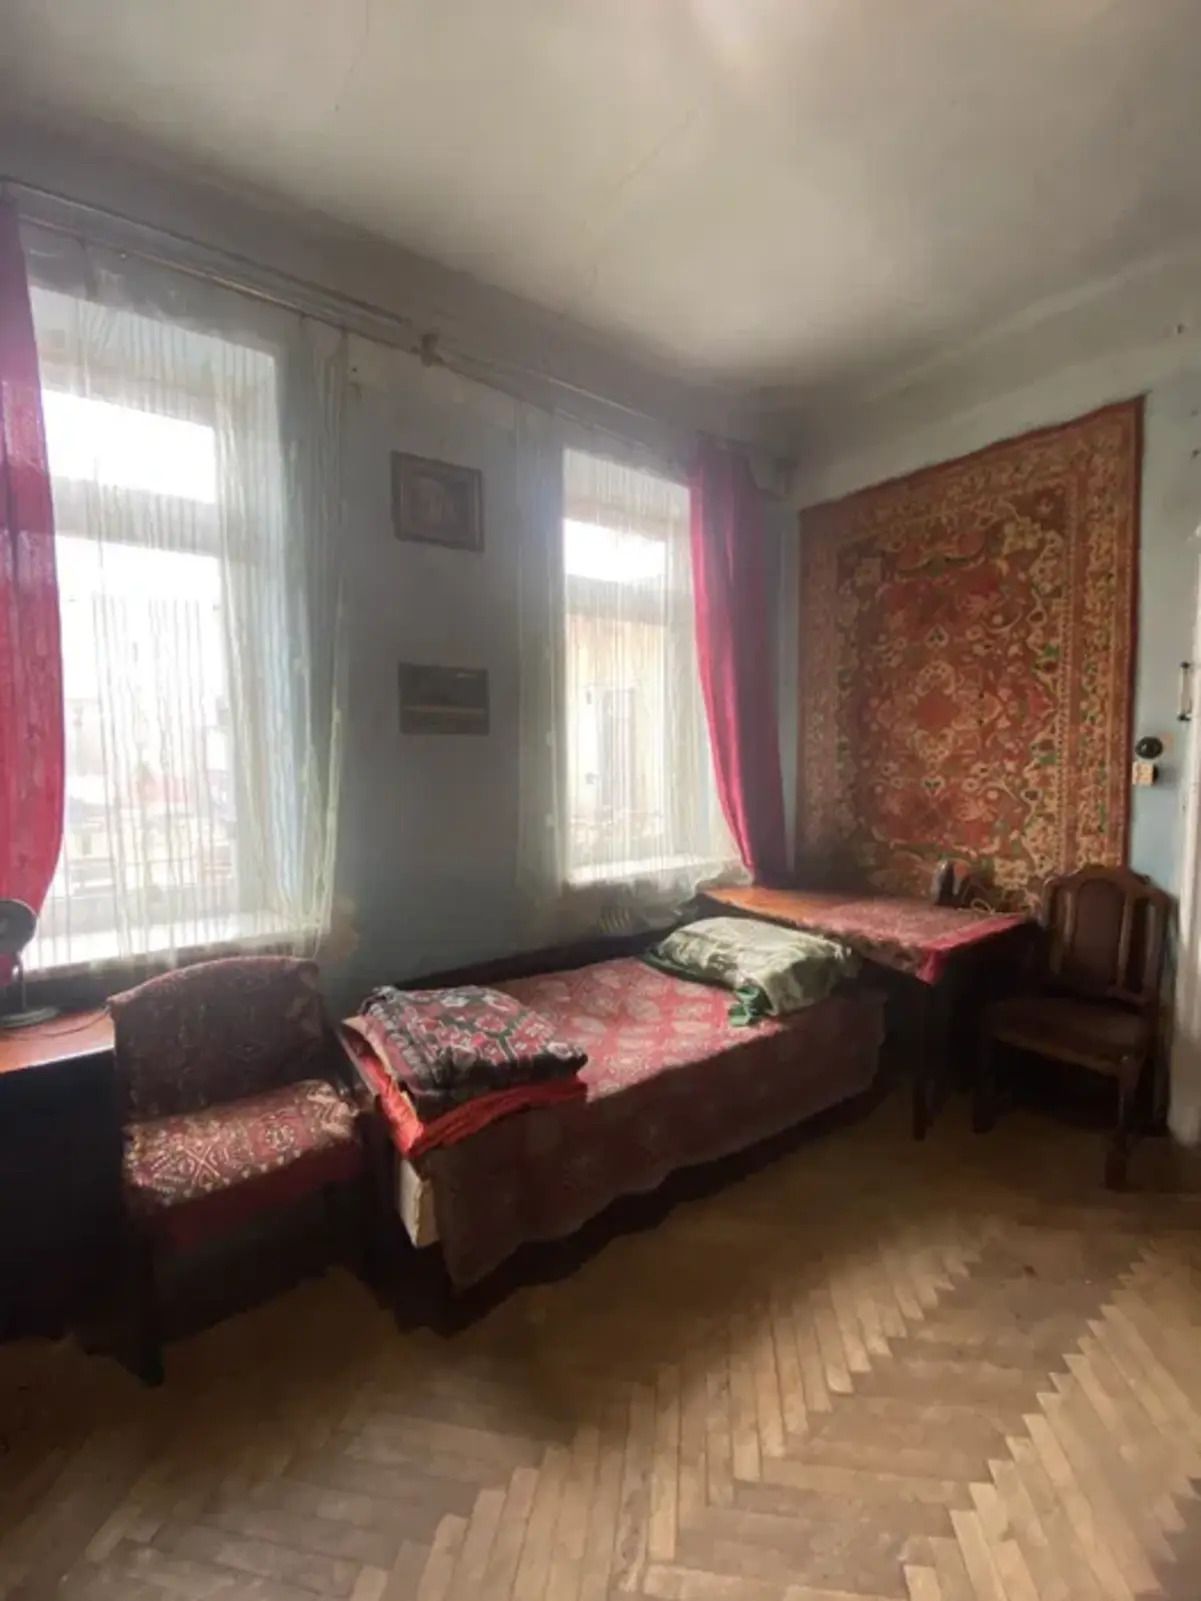 Найдешевша квартира у Львові - скільки коштує та який має вигляд - Нерухомість